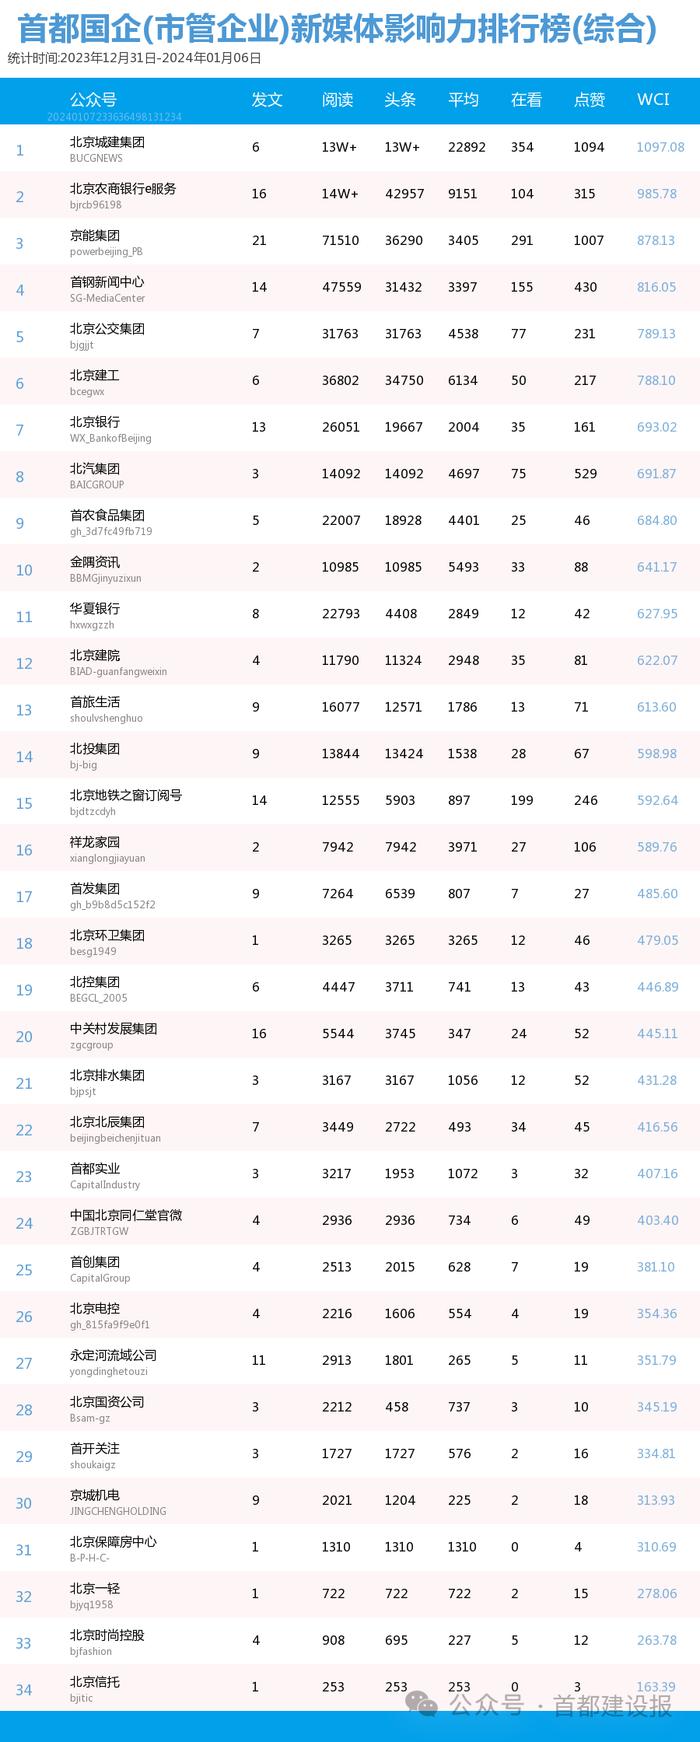 【北京国企新媒体影响力排行榜】1月周榜(2023.12.31-2024.1.6)第389期